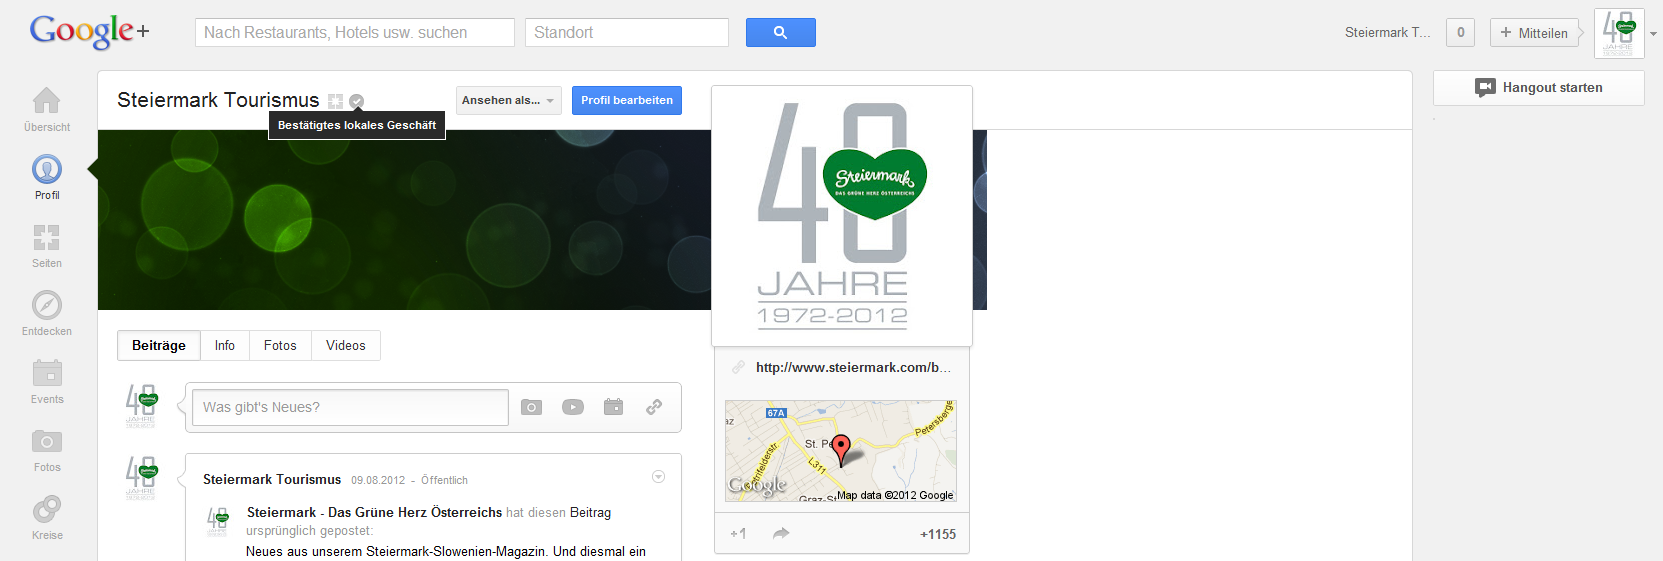 Die Verknüpfung des Google+ Local (früher Google Places) Eintrages mit der Google+ Seite ist nun bestätigt!